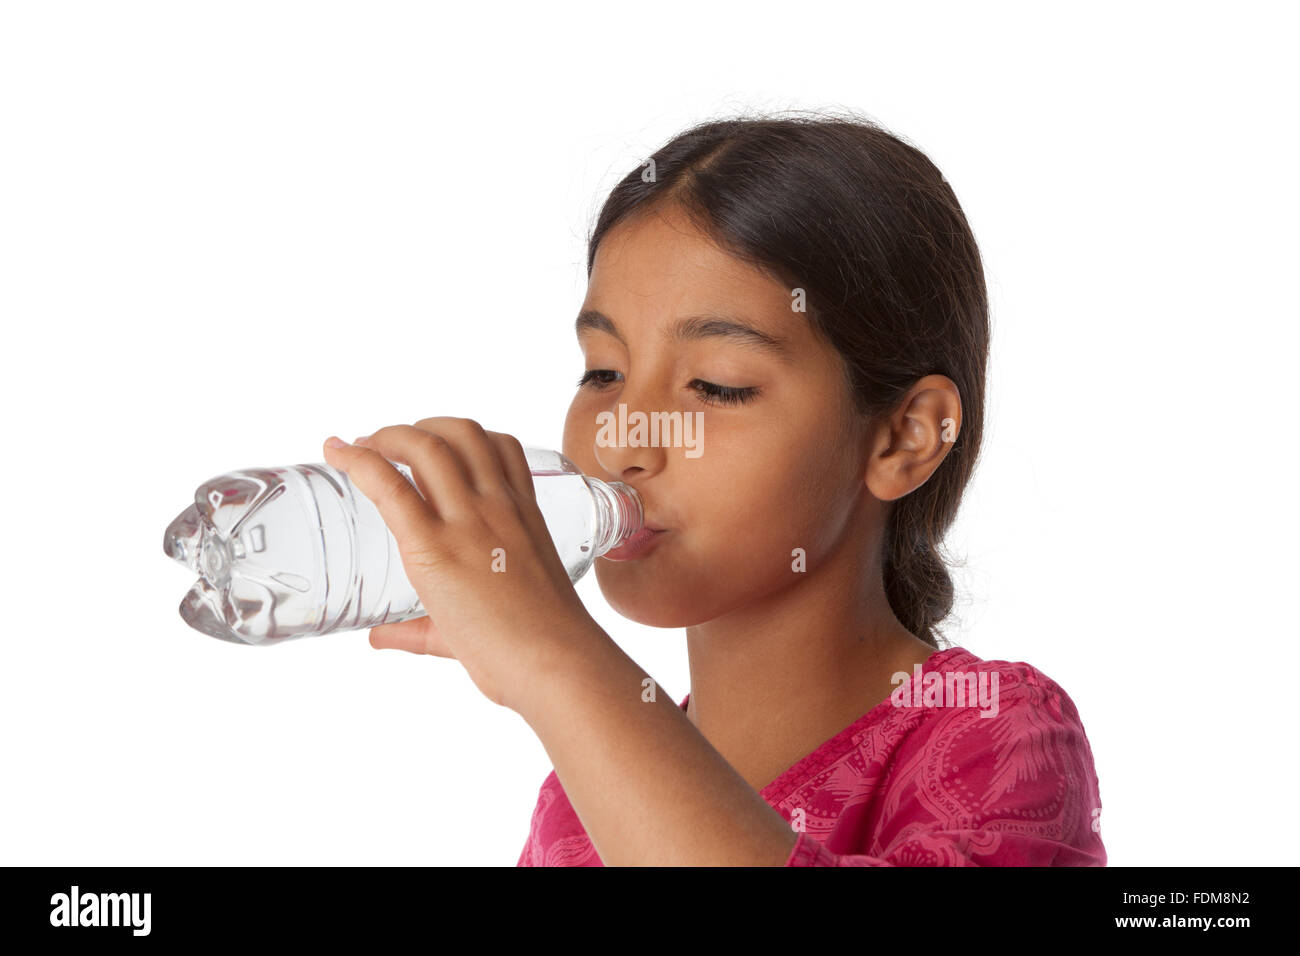 Jeune adolescente de boire de l'eau fraîche d'une bouteille sur fond blanc Banque D'Images